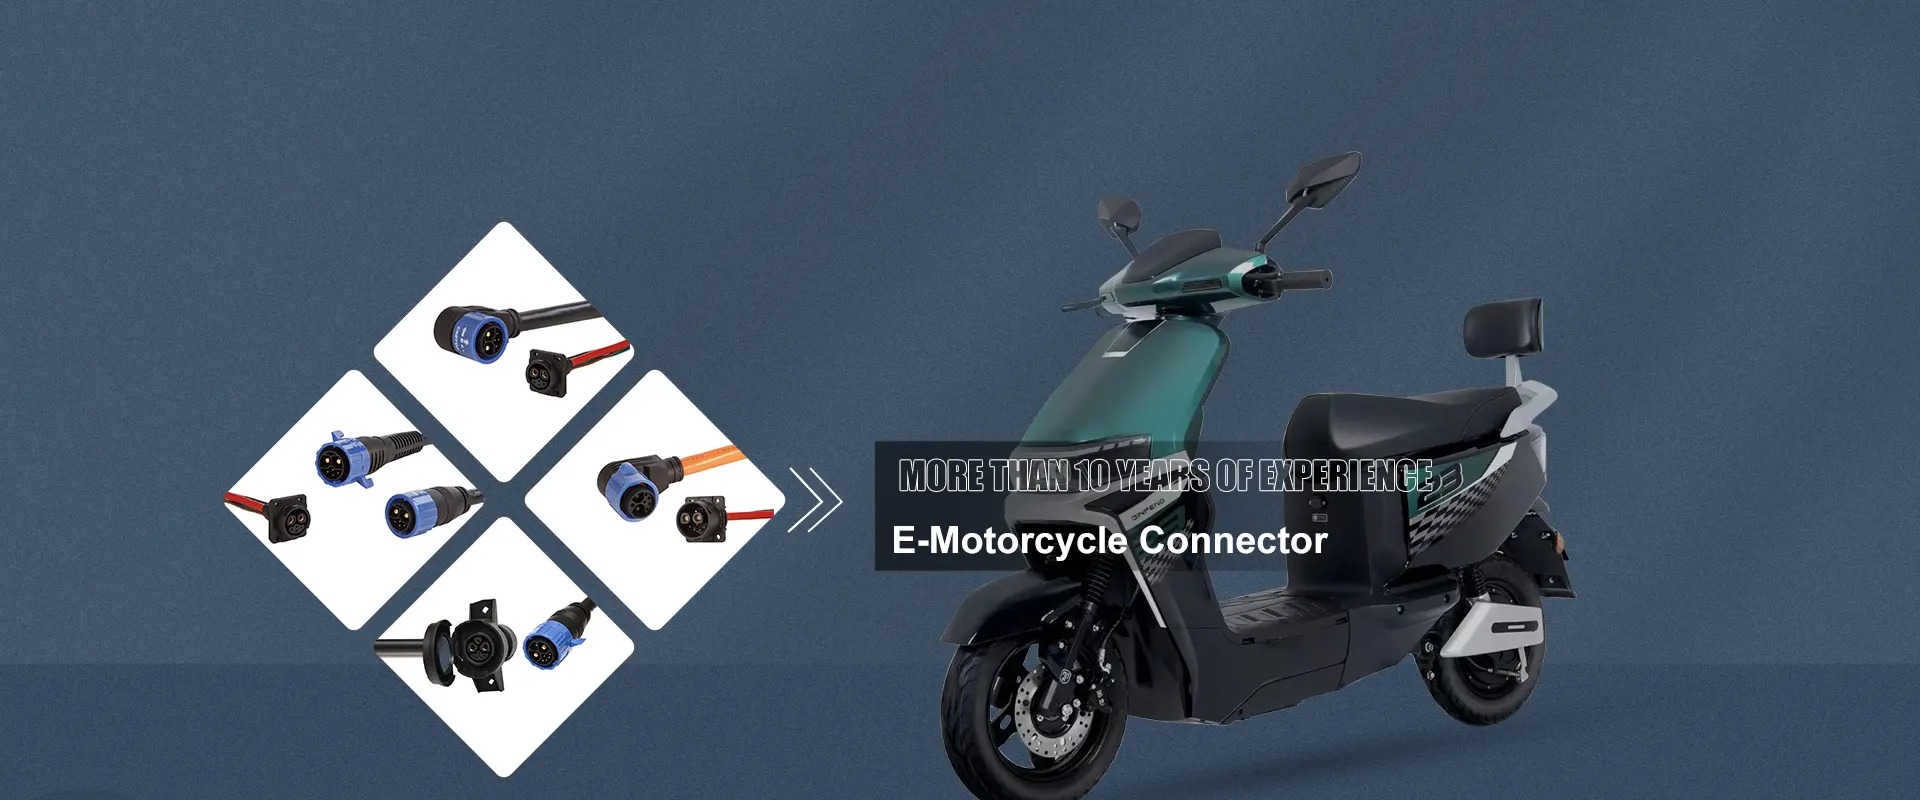 Kinas tillverkare av e-motorcykelkontakter